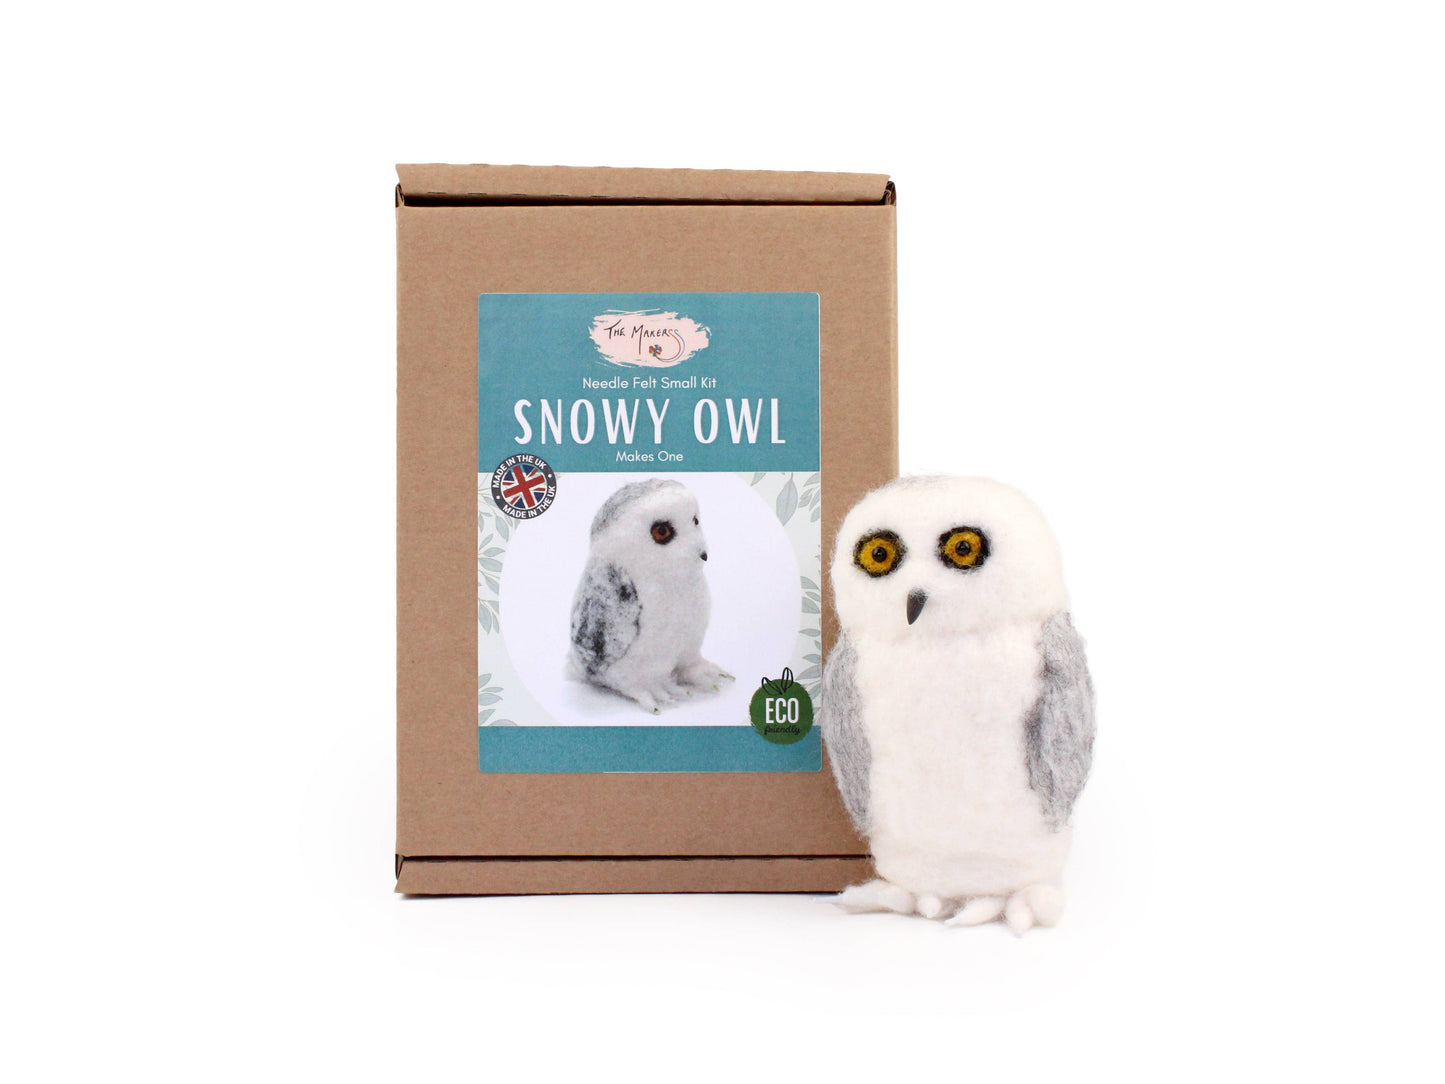 Snowy Owl Small Needle Felt Kit